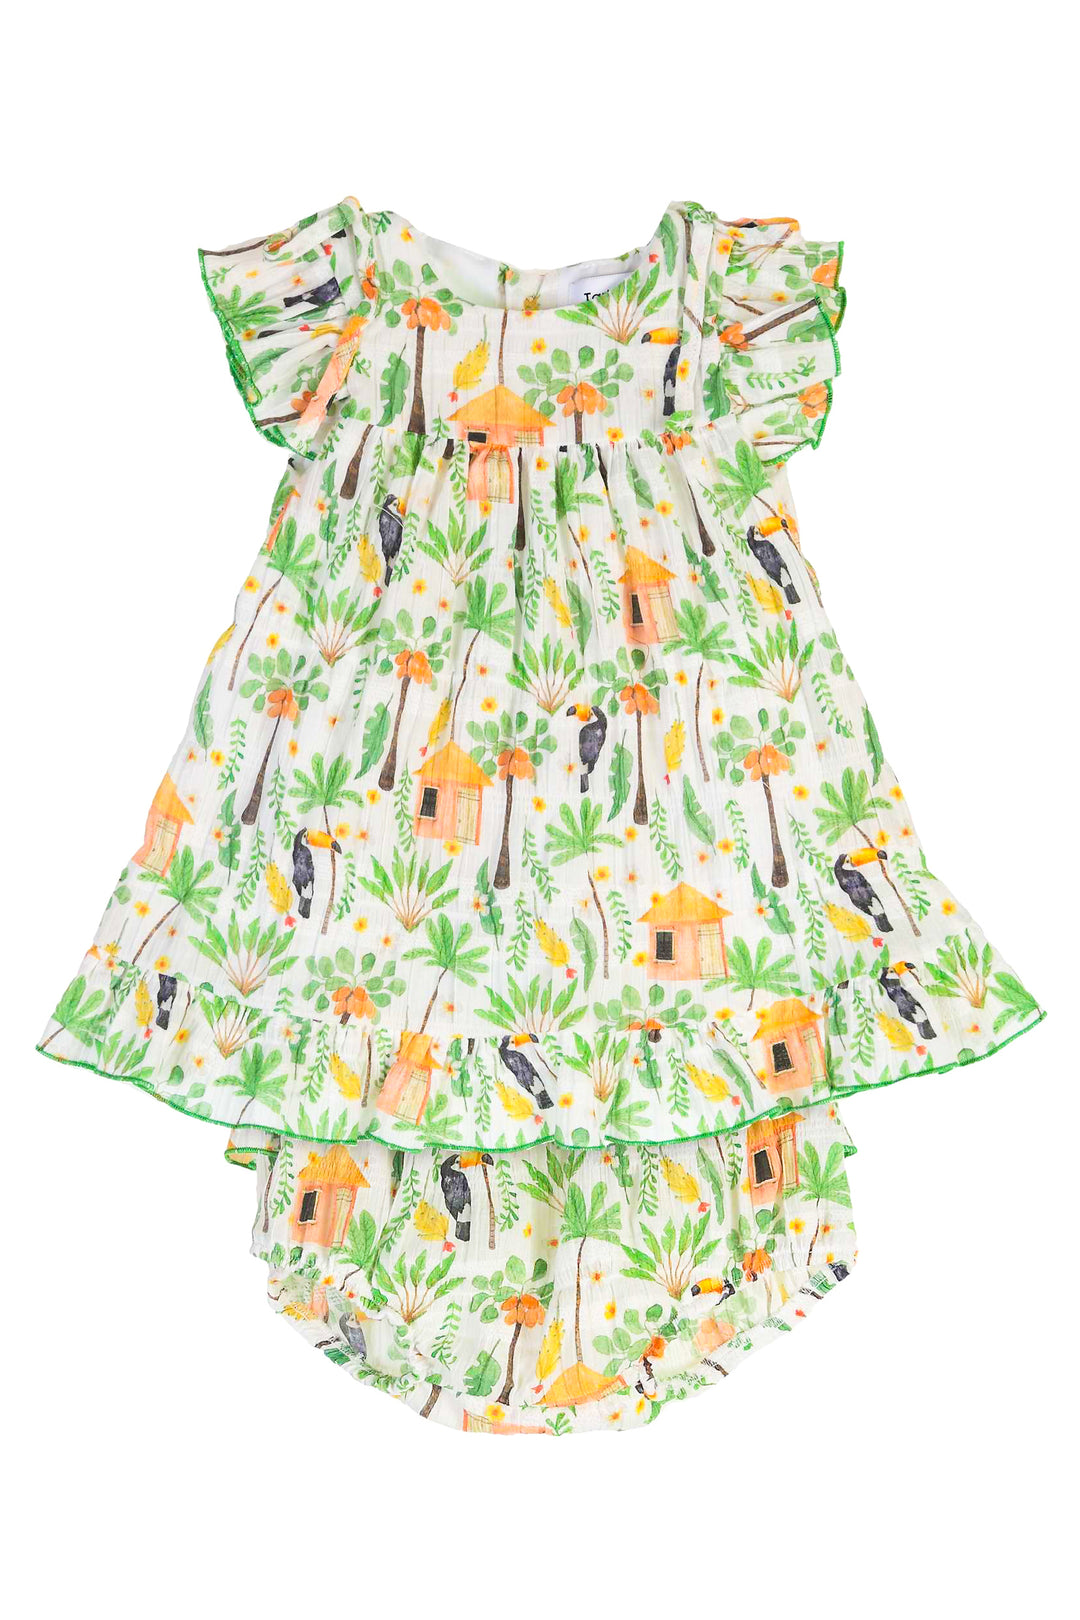 Tartaleta "Brielle" Green Jungle Print Dress & Bloomers | Millie and John